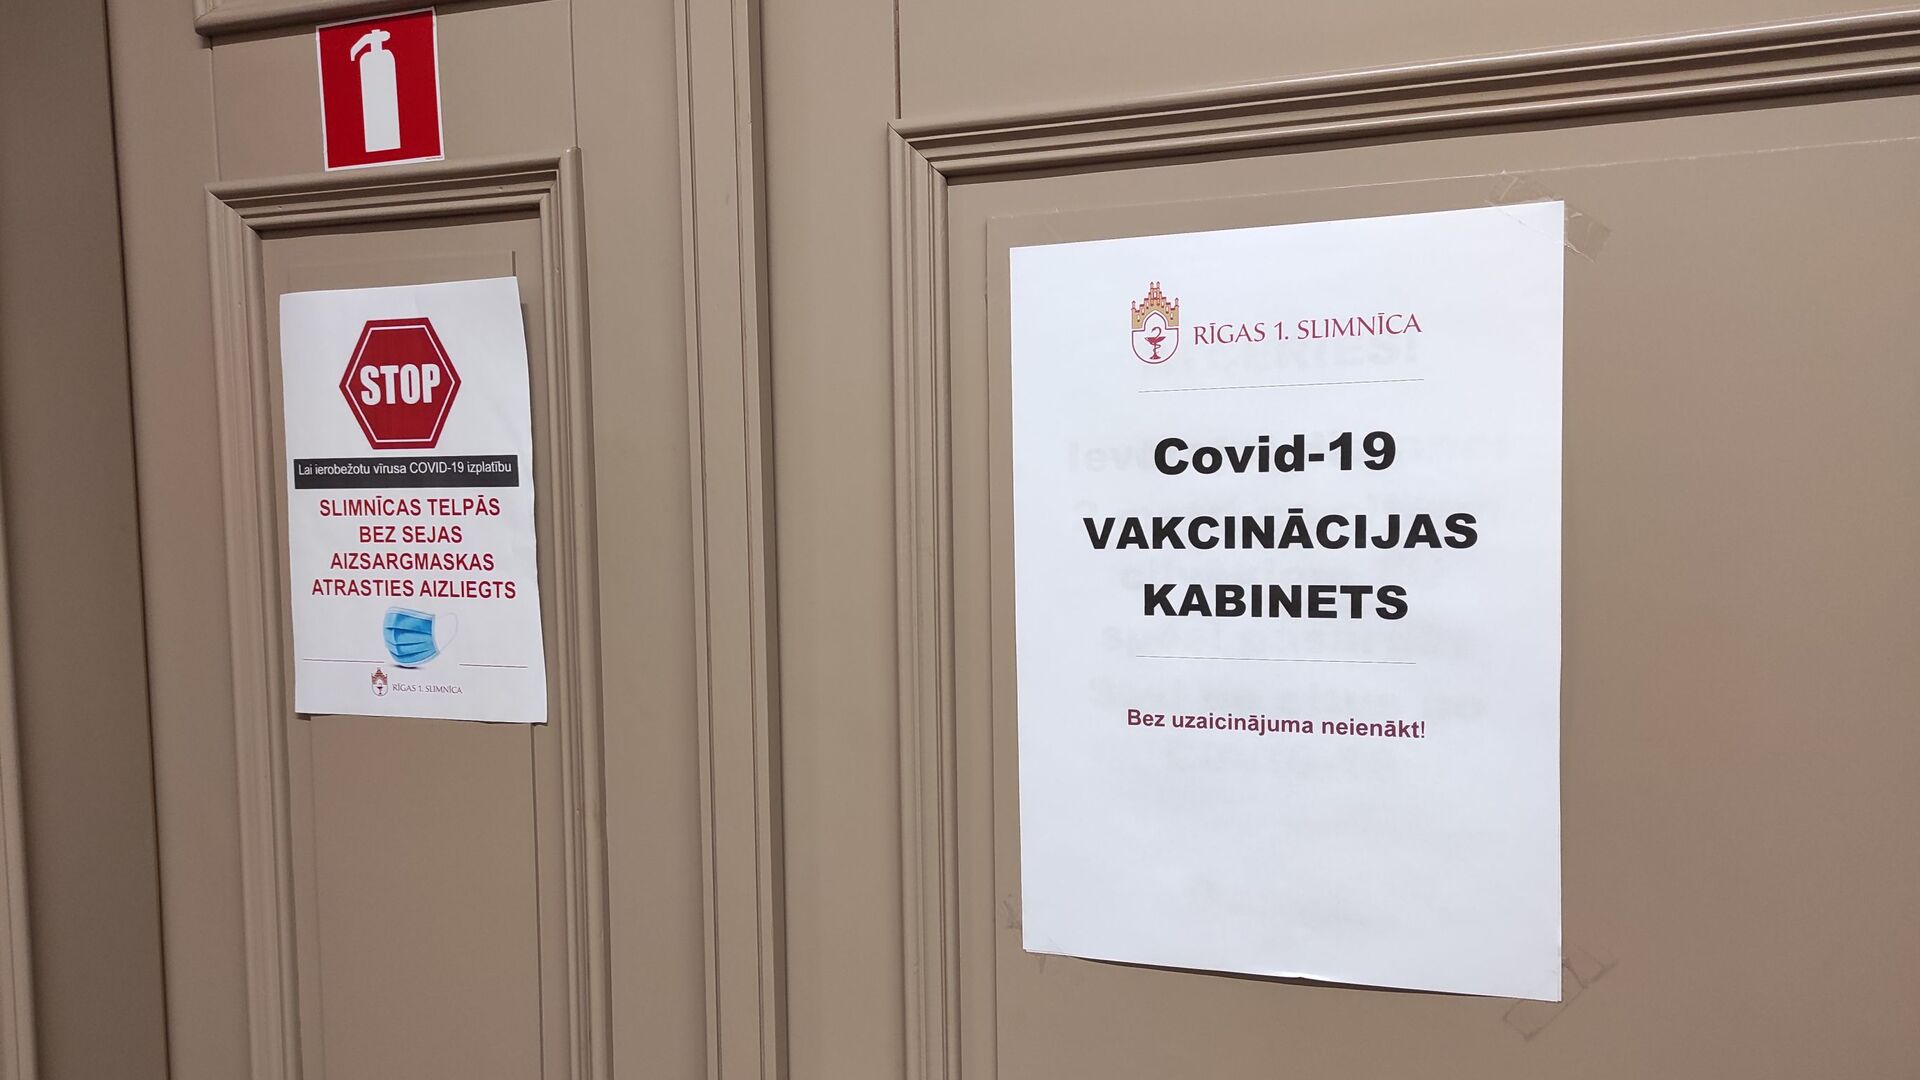 Кабинет вакцинации в Первой городской больнице Риги  - Sputnik Латвия, 1920, 26.04.2021